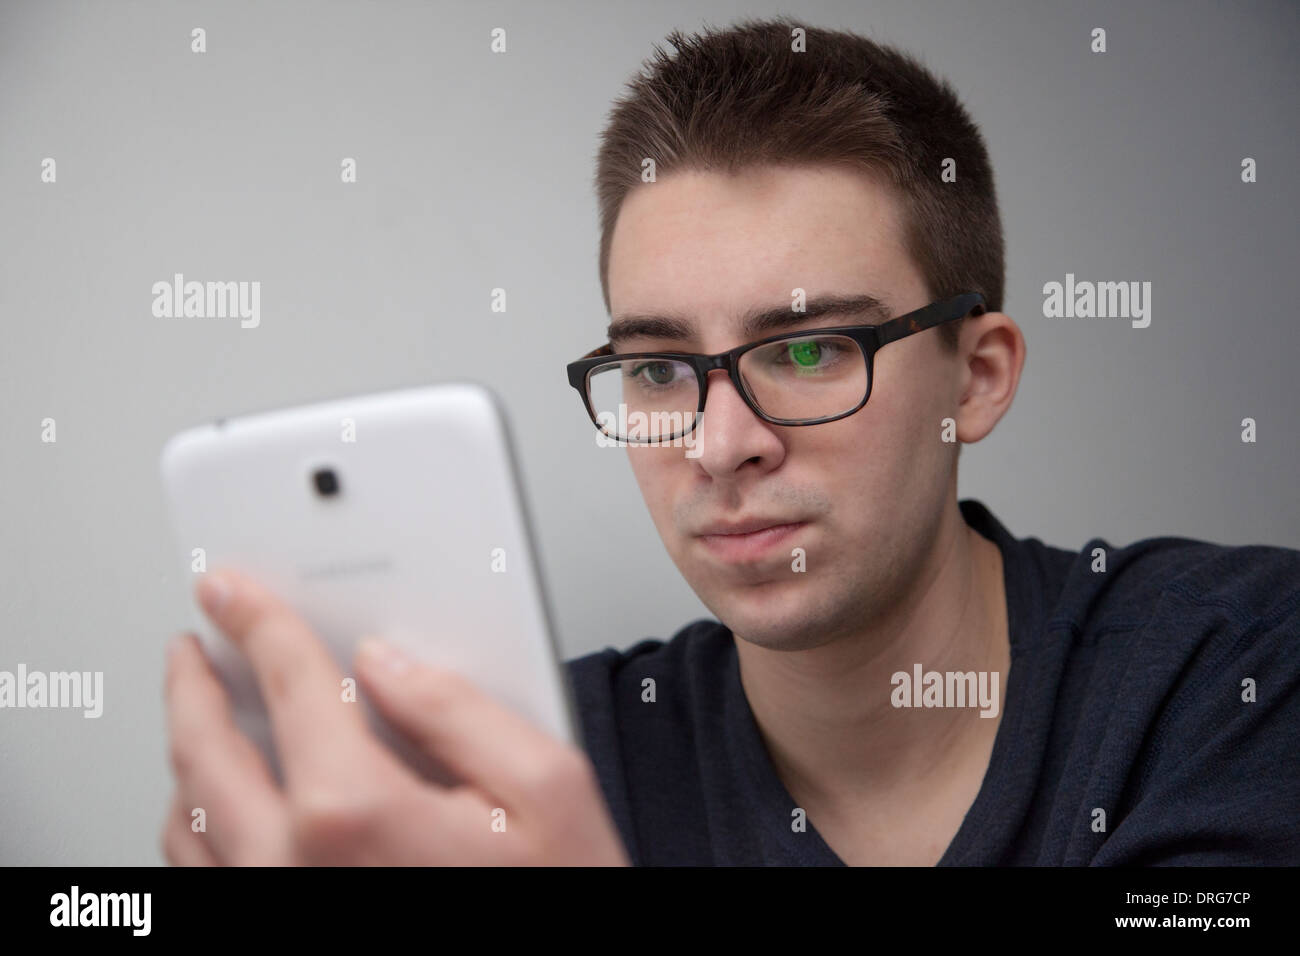 Jeune homme portant des lunettes assis à l'aide d'une mini tablette numérique. Vue de face. Banque D'Images